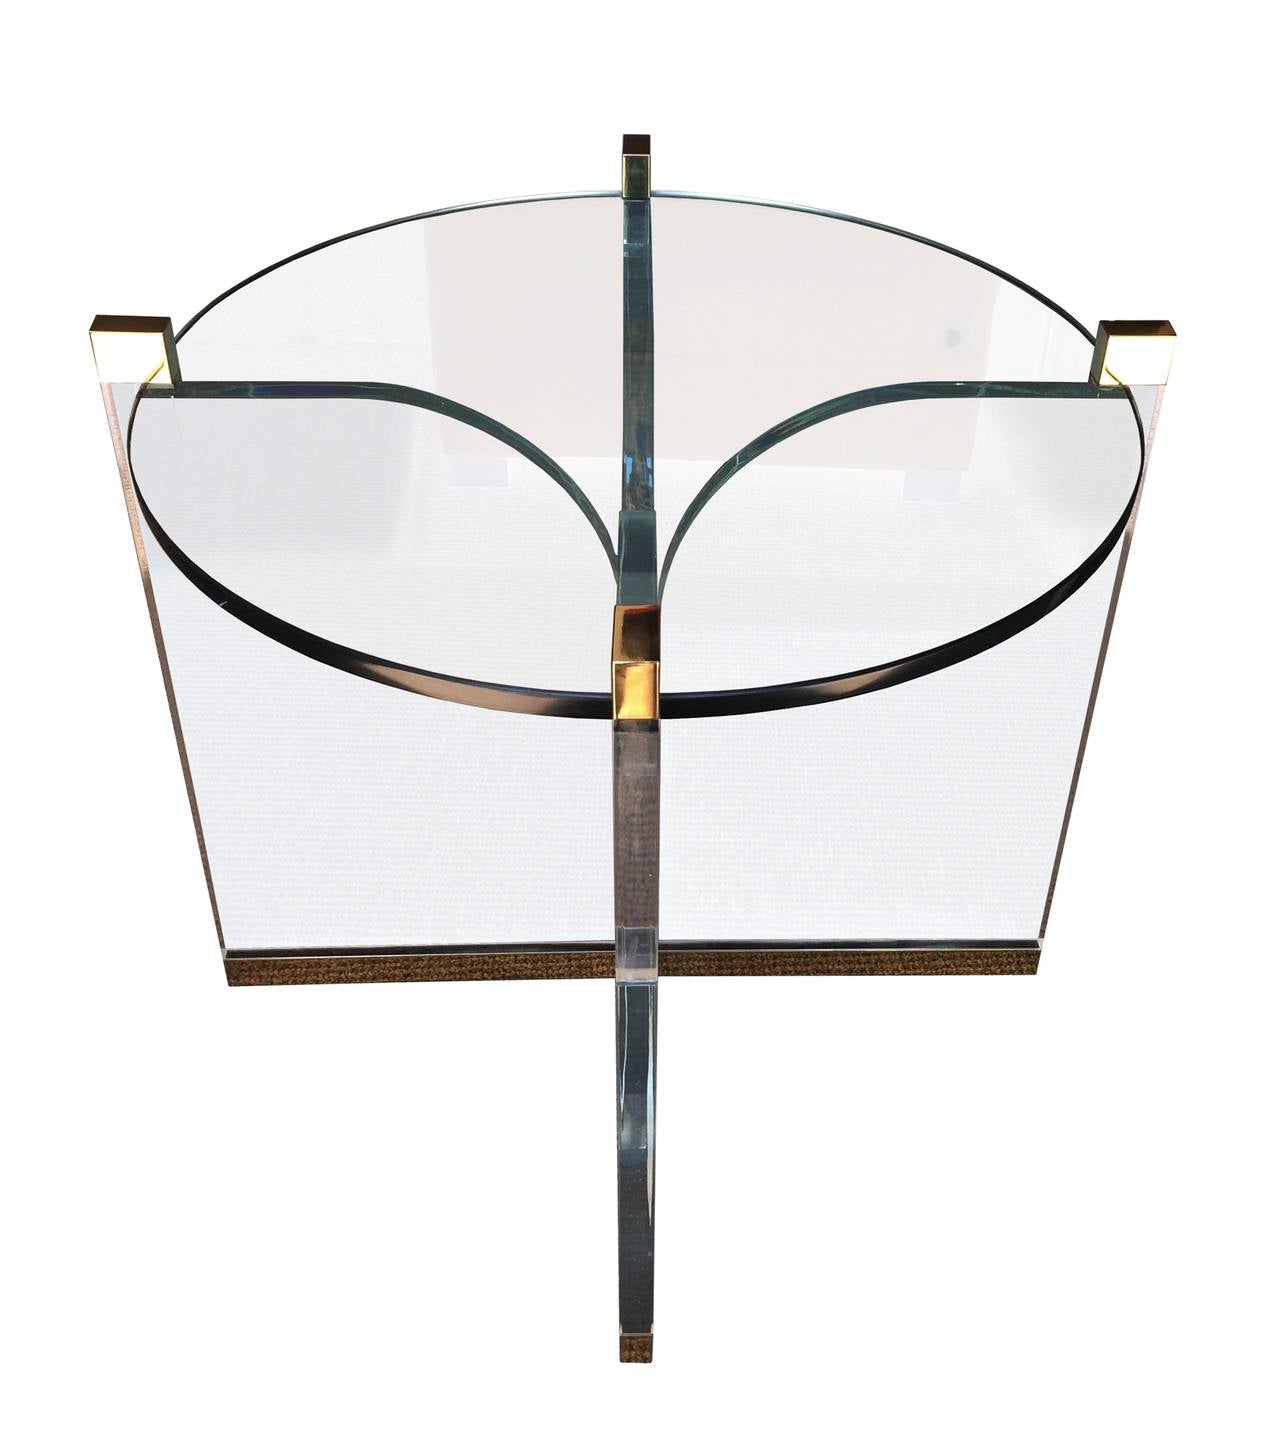 Superbe table centrale en Lucite et laiton conçue et fabriquée par Charles Hollis Jones au milieu des années 1970. La table a un aspect très délicat et est pourtant très imposante en termes de design. La combinaison des métaux est parfaite et